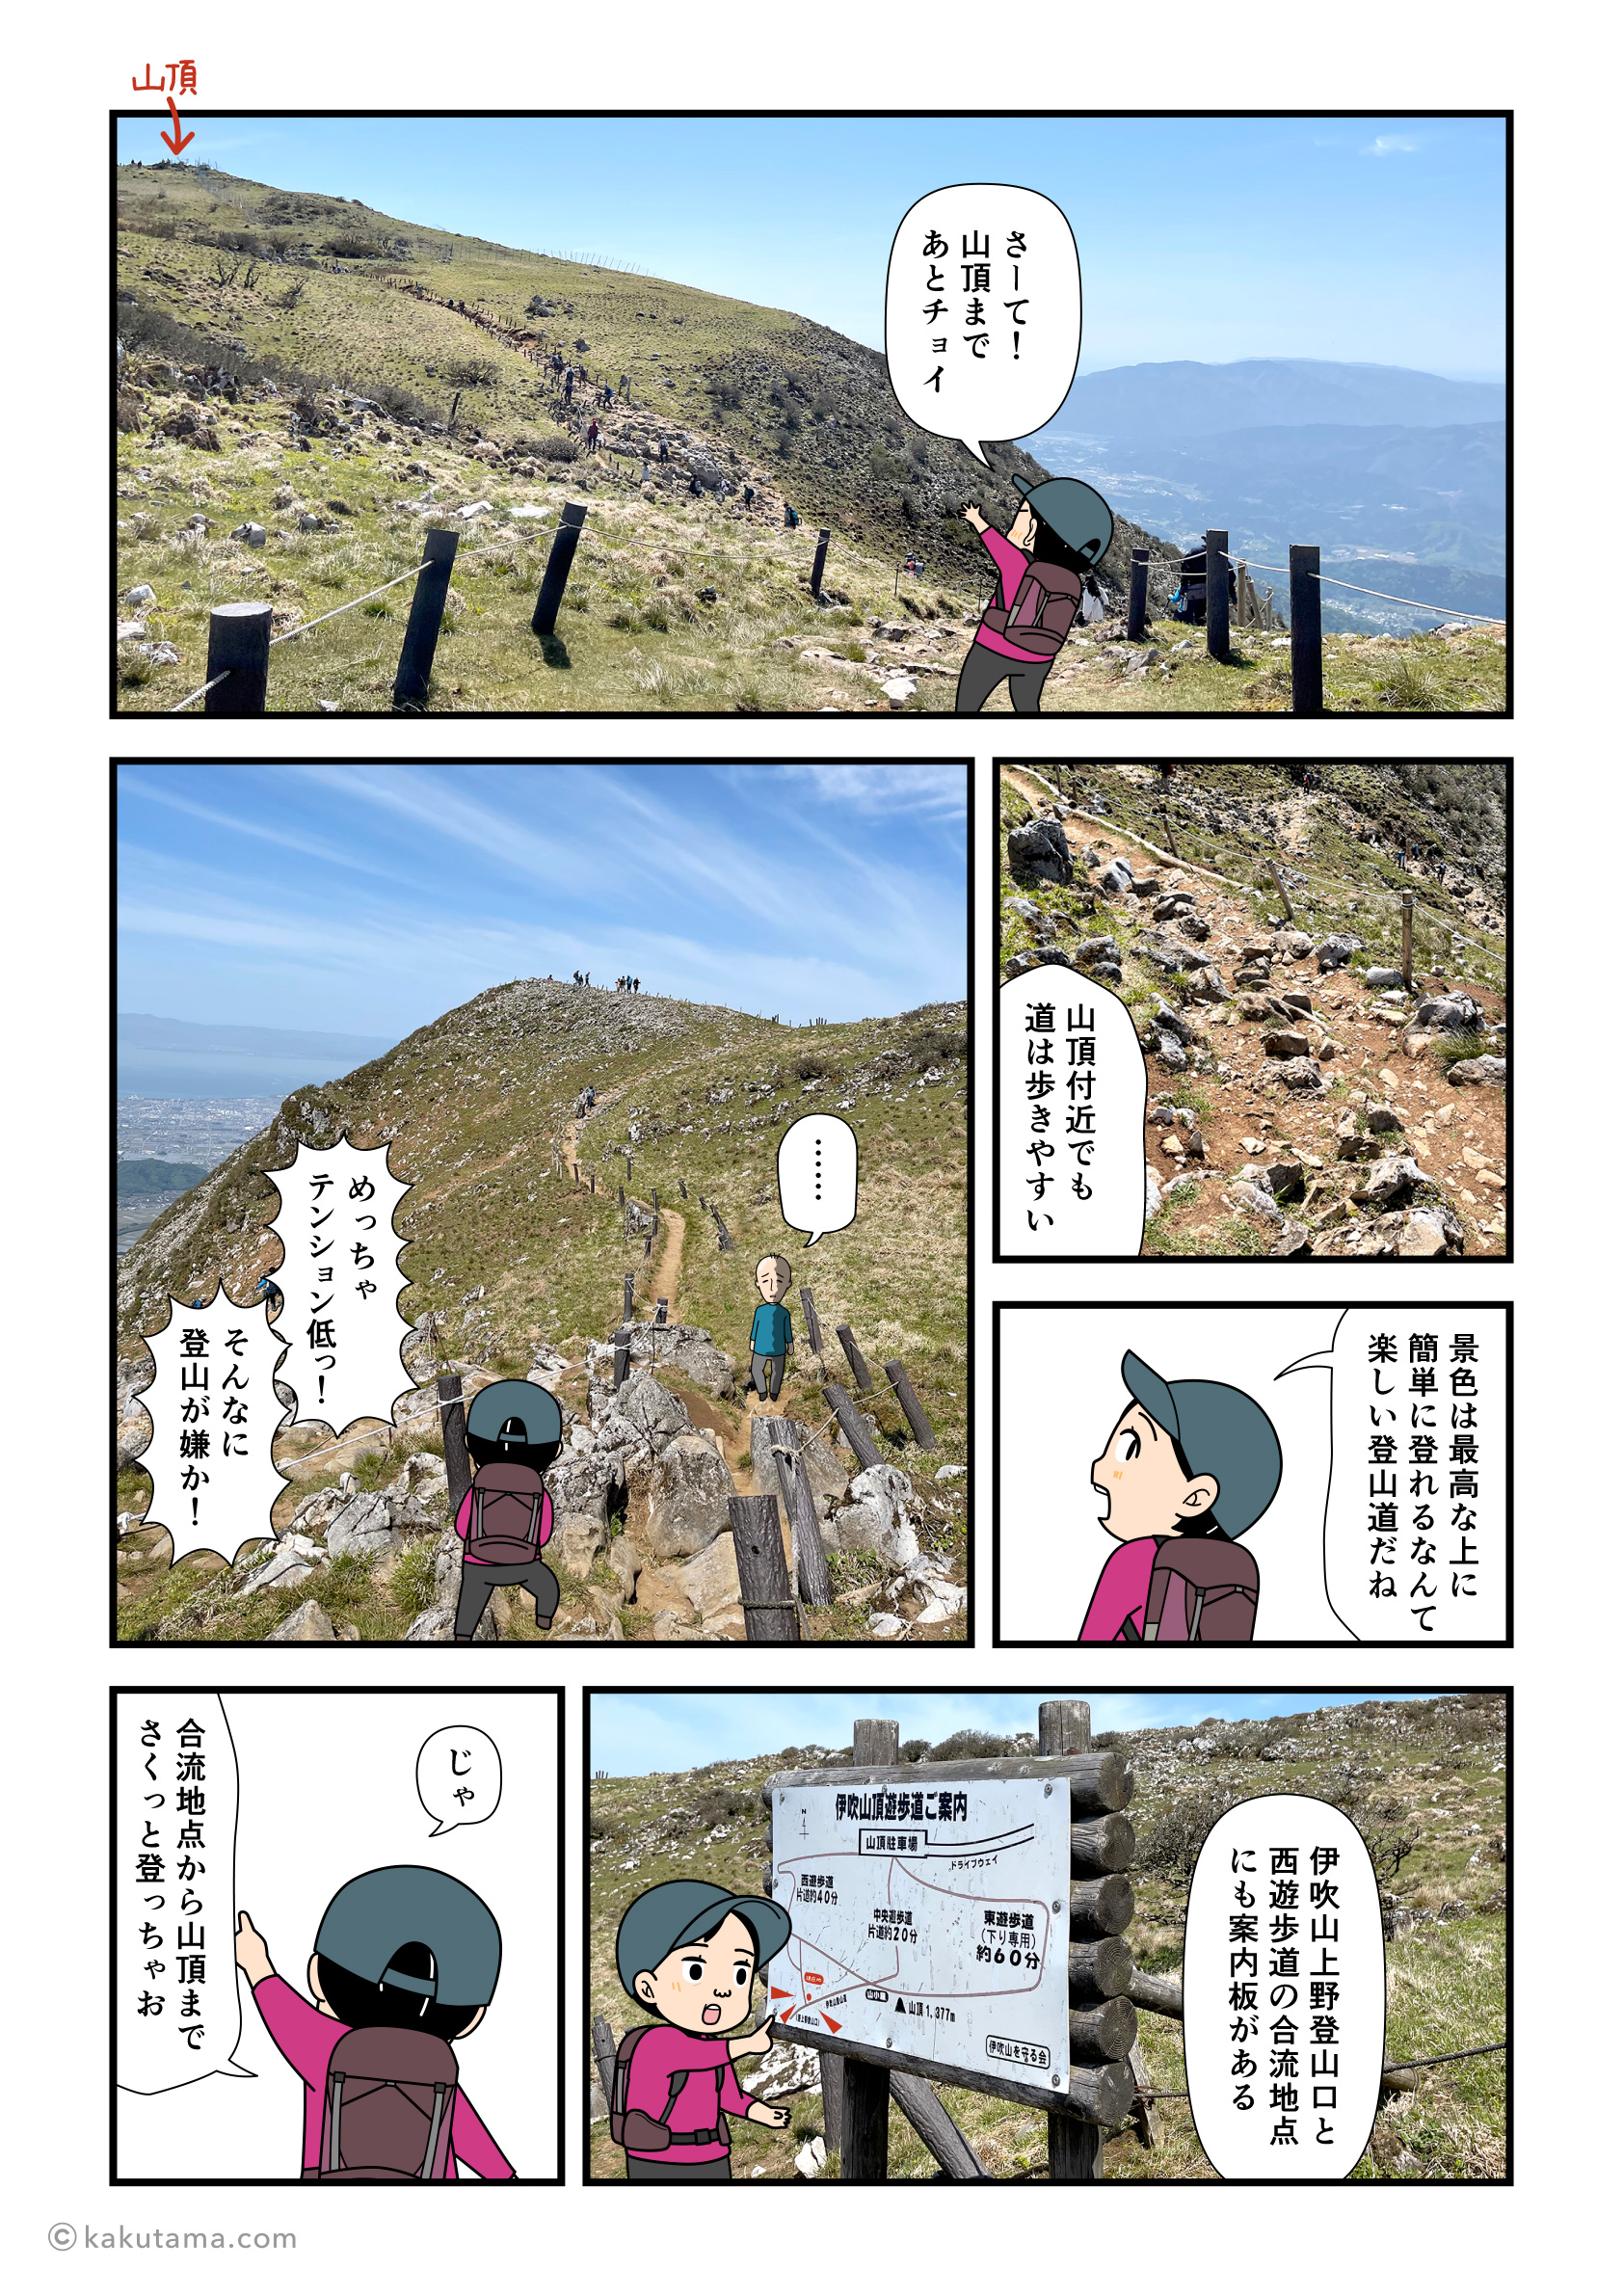 伊吹山西登山道から山頂を目指す登山者の漫画